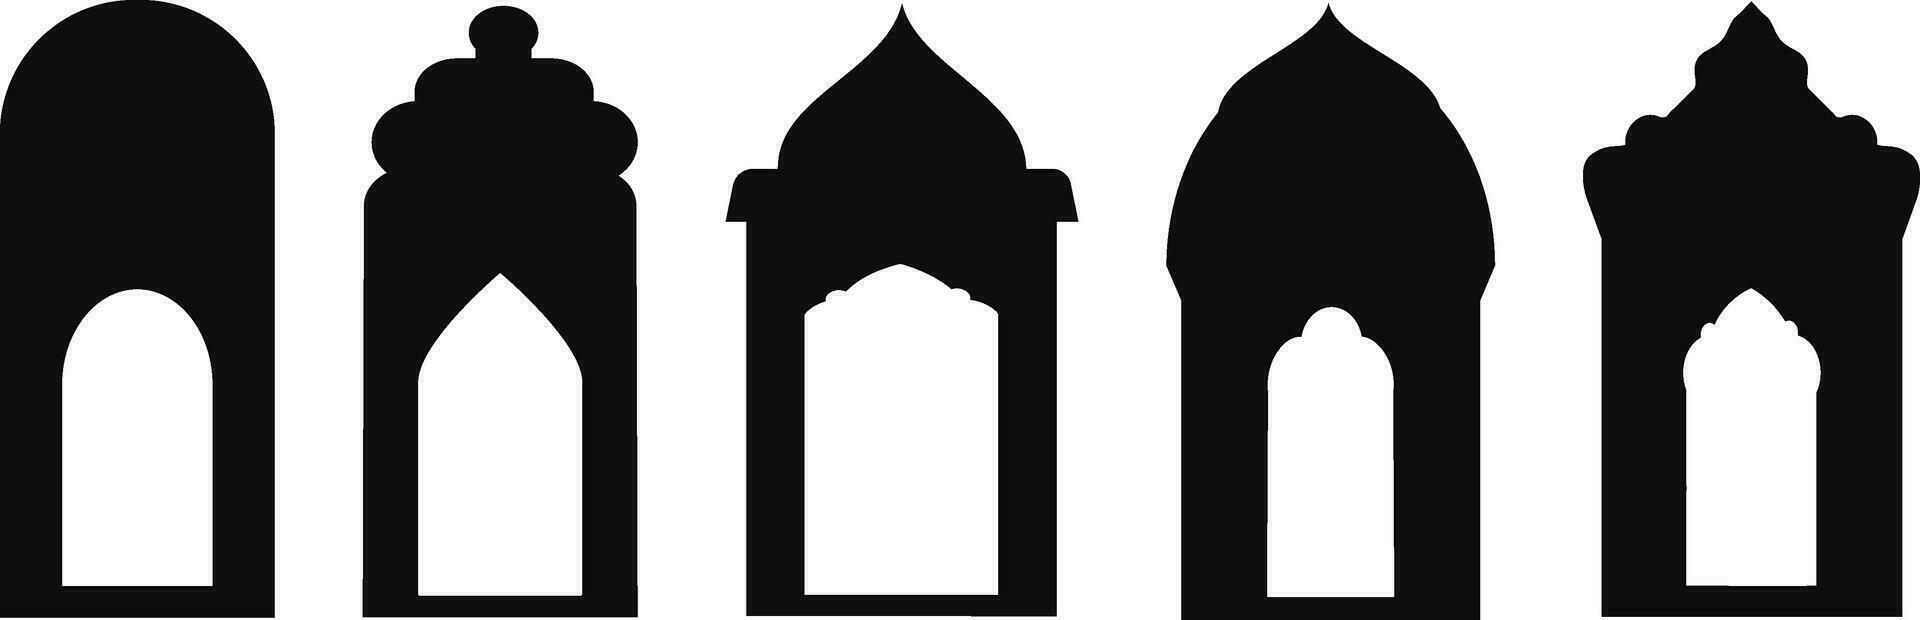 conjunto do Preto e branco silhuetas do islâmico windows.arab quadro, Armação set.ramadan kareem simbol ícone. vetor